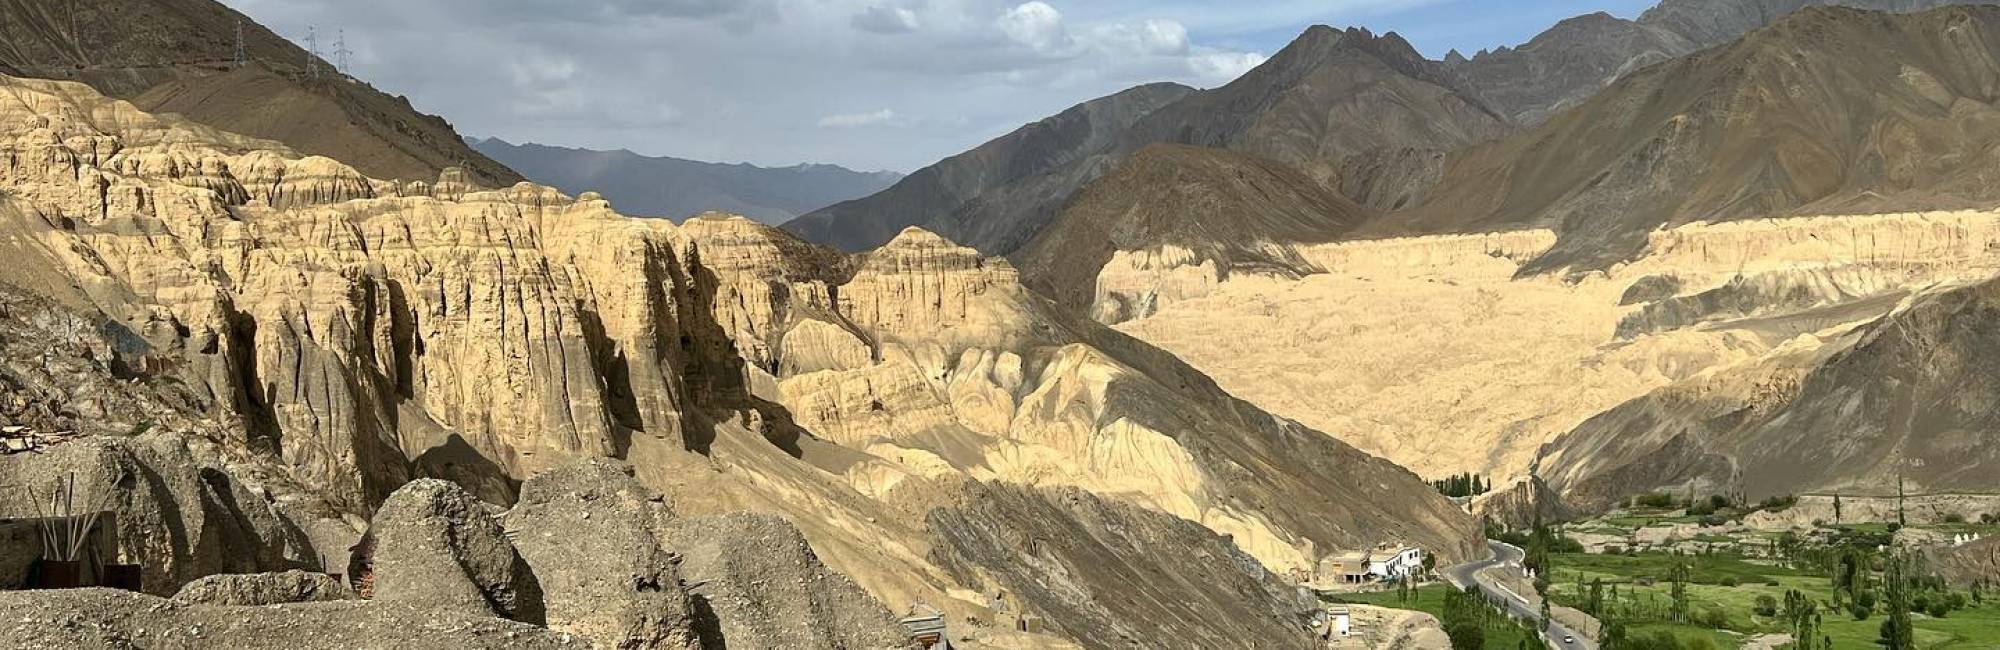 Himalajske puščave Meseceva pokrajina, Lamayuru, Ladakh, Indija Foto: dr. Nina Petek